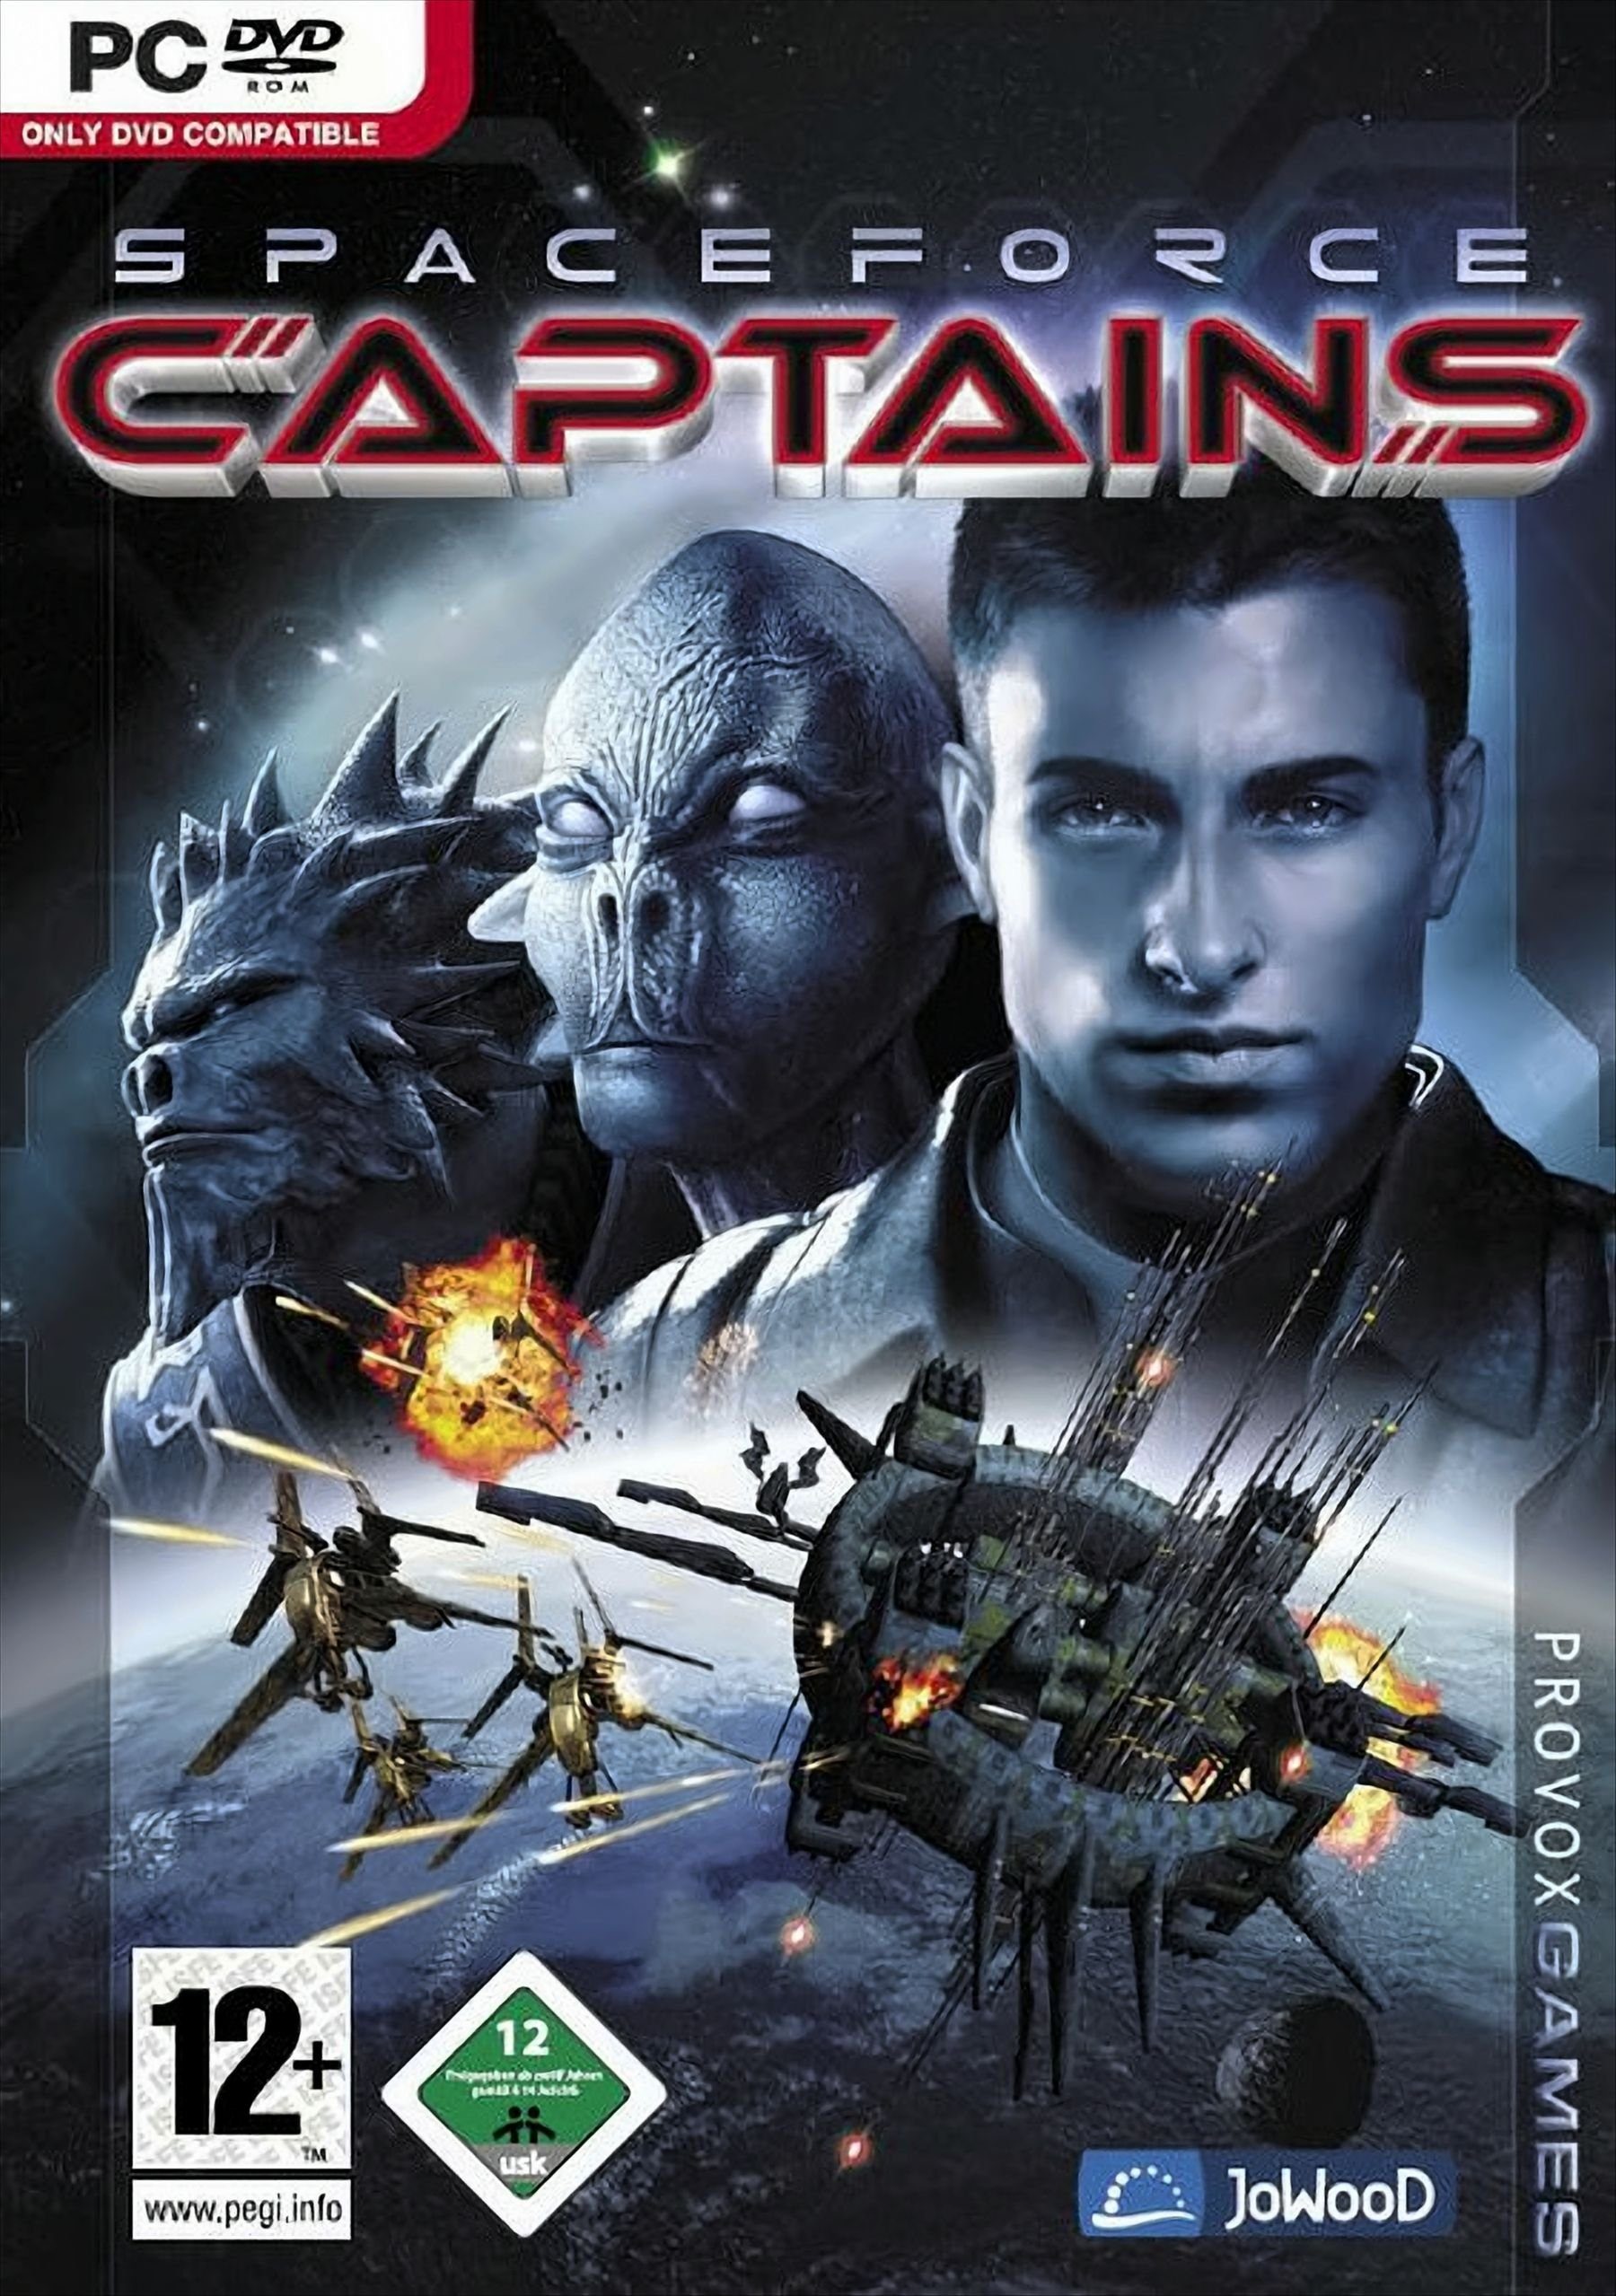 SpaceForce: Captains PC